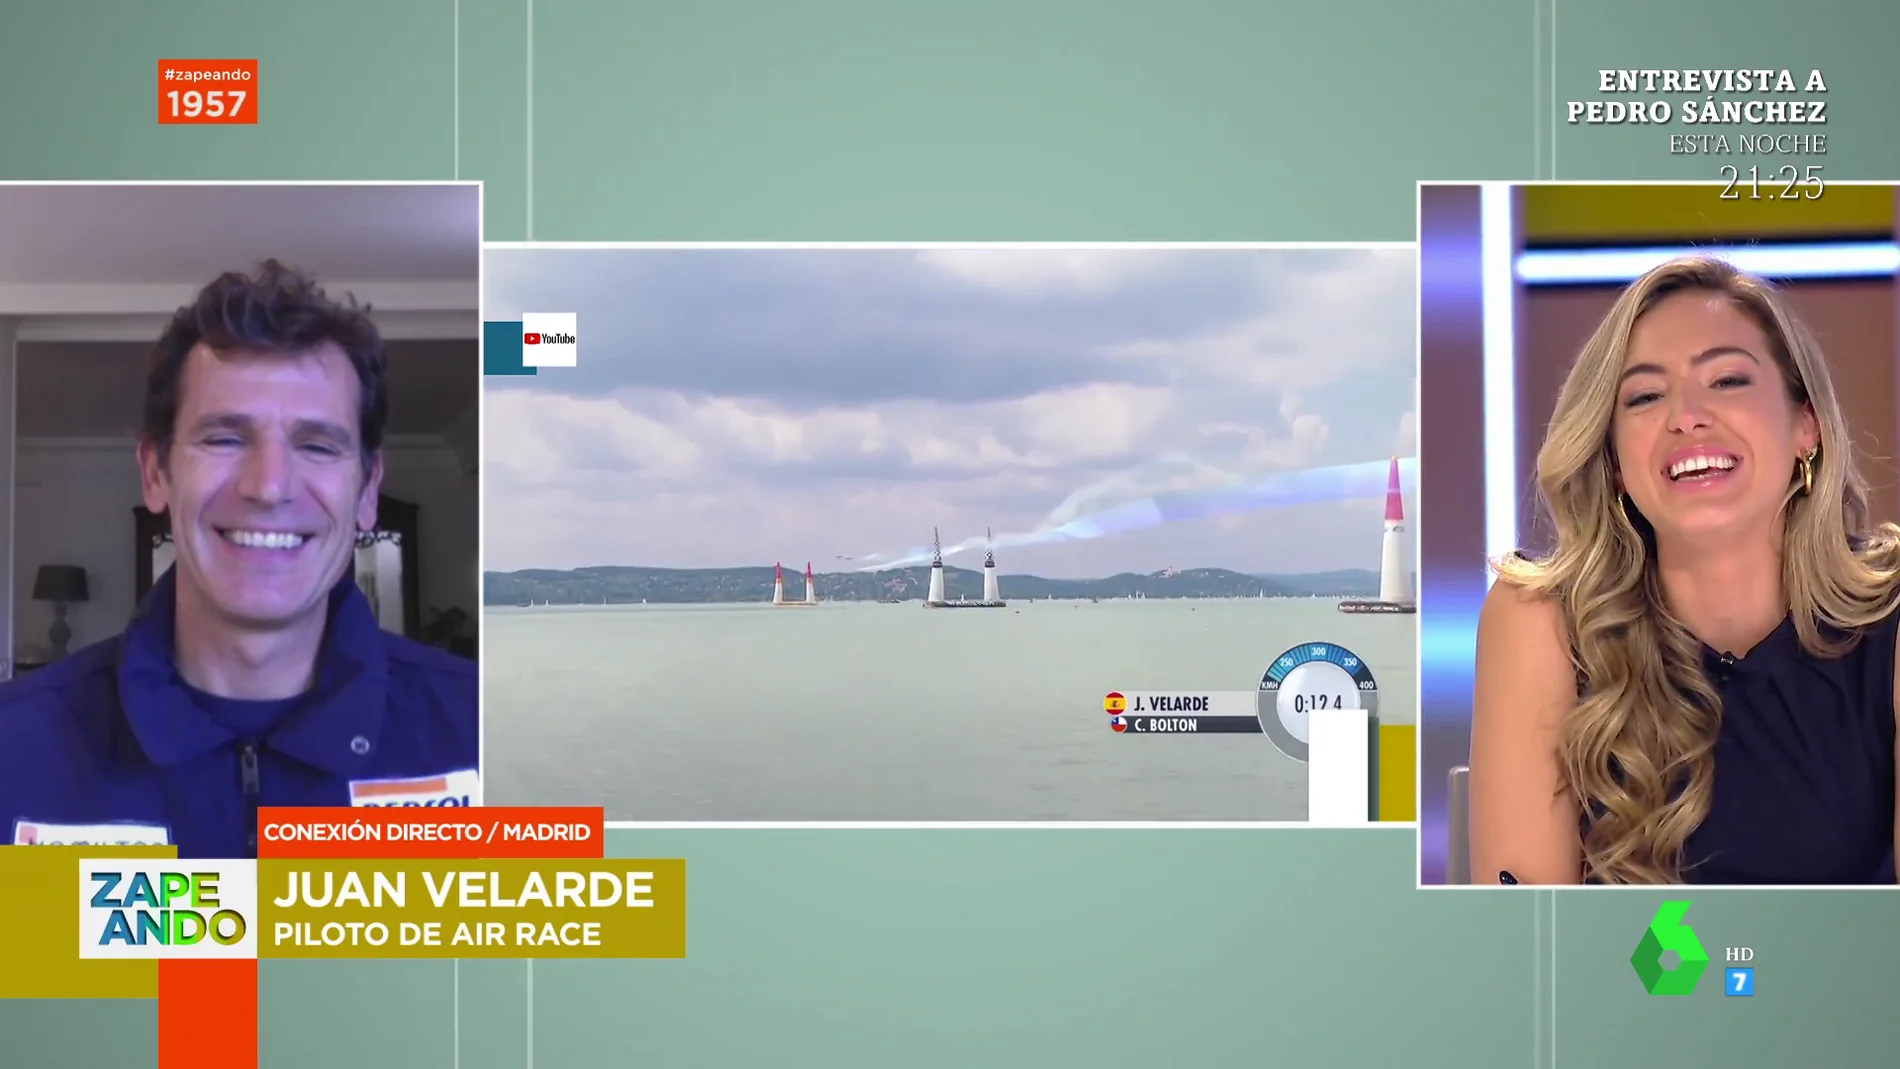 Juan Velarde explica cómo es ser piloto de Air Race: "Siempre me llamó la atención llevar al límite al avión"